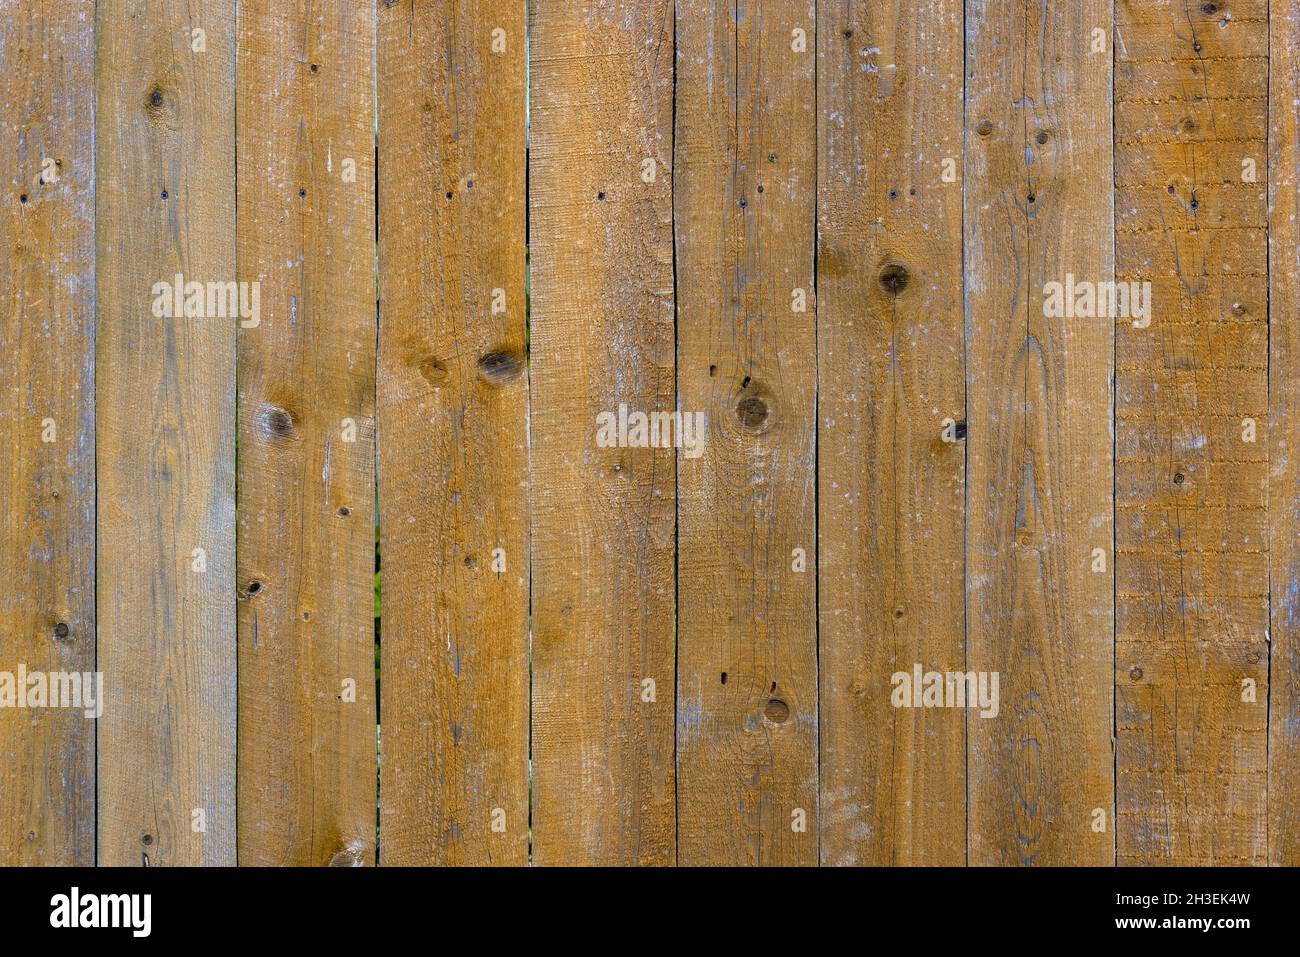 superficie de tabla de tablones de madera gris y marrón envejecida y seca - fondo y textura de marco completo Foto de stock